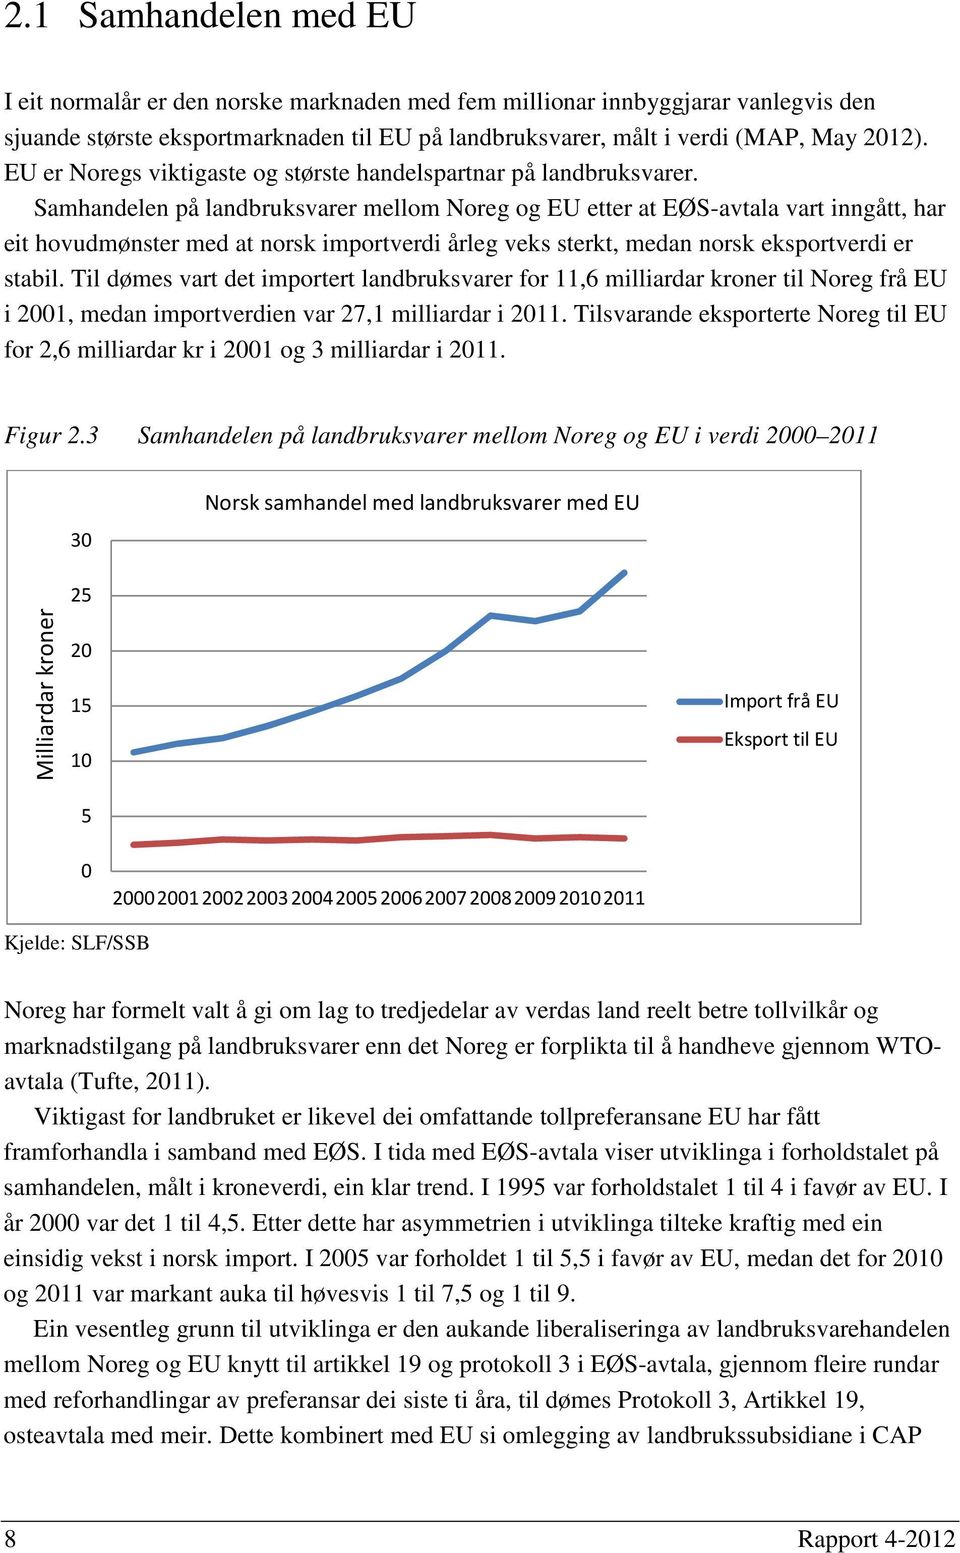 Samhandelen på landbruksvarer mellom Noreg og EU etter at EØS-avtala vart inngått, har eit hovudmønster med at norsk importverdi årleg veks sterkt, medan norsk eksportverdi er stabil.